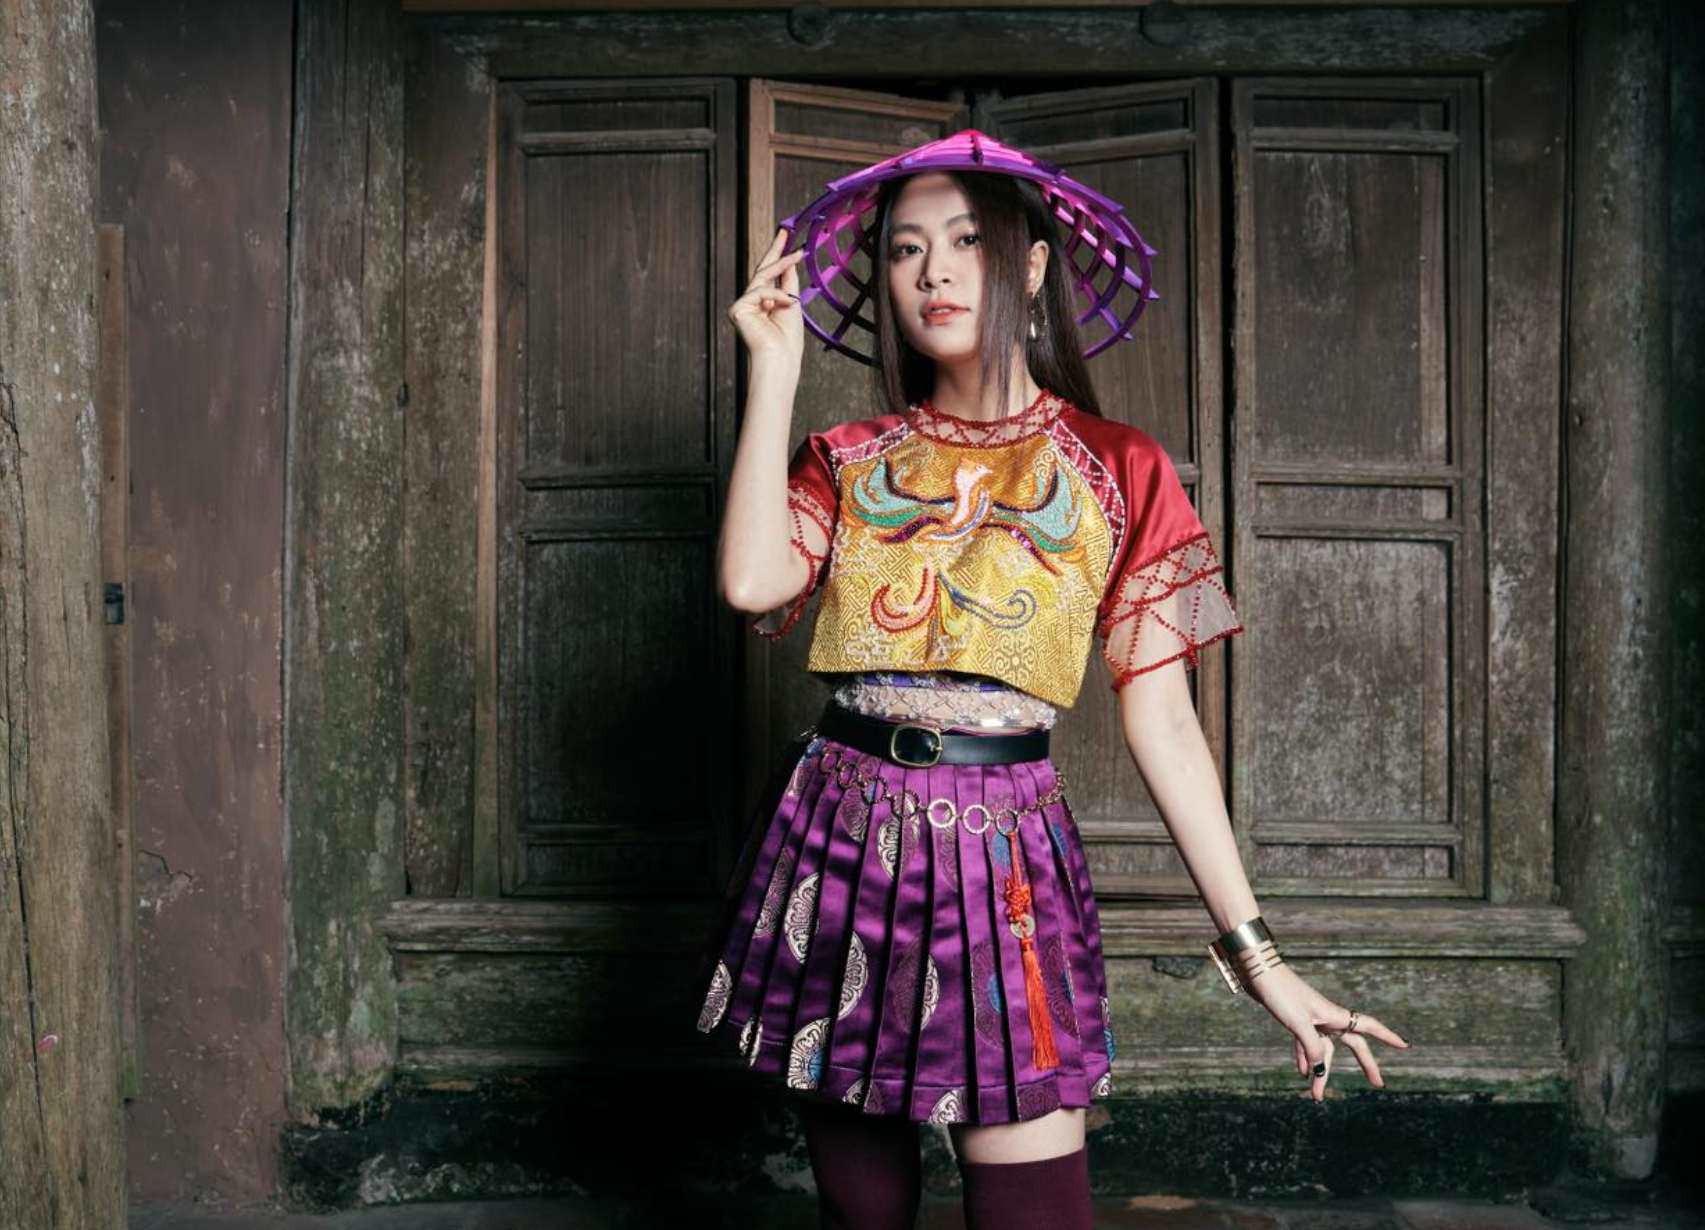 Hoàng Thùy Linh đam mê diện váy ngắn, trang phục cầu kỳ khoe vóc dáng đầy đặn - 3